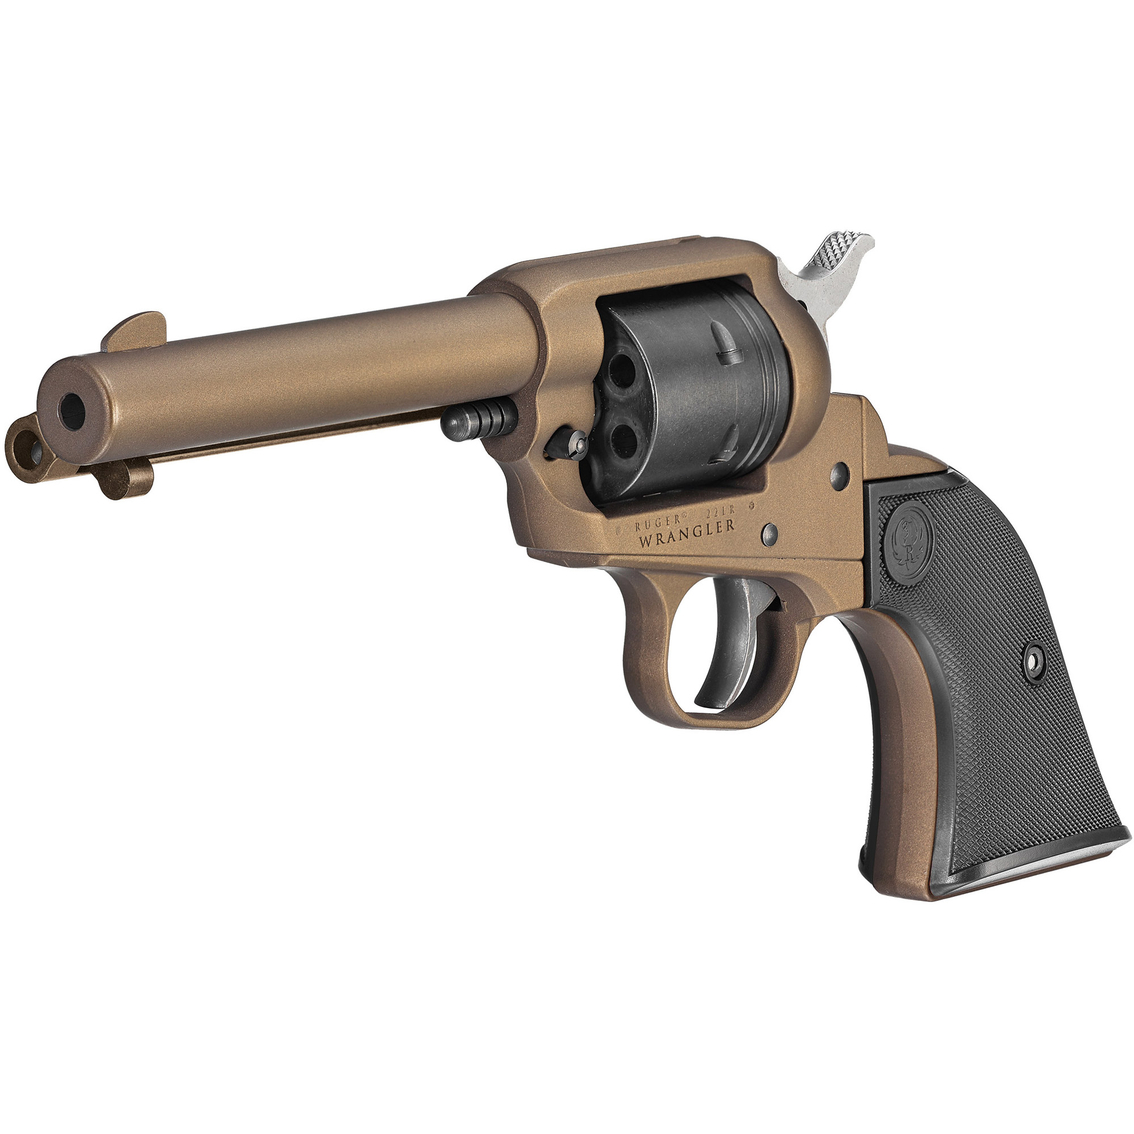 Ruger Wrangler 22 Lr  In. Barrel 6 Rnd Revolver Silver | Handguns |  Sports & Outdoors | Shop The Exchange